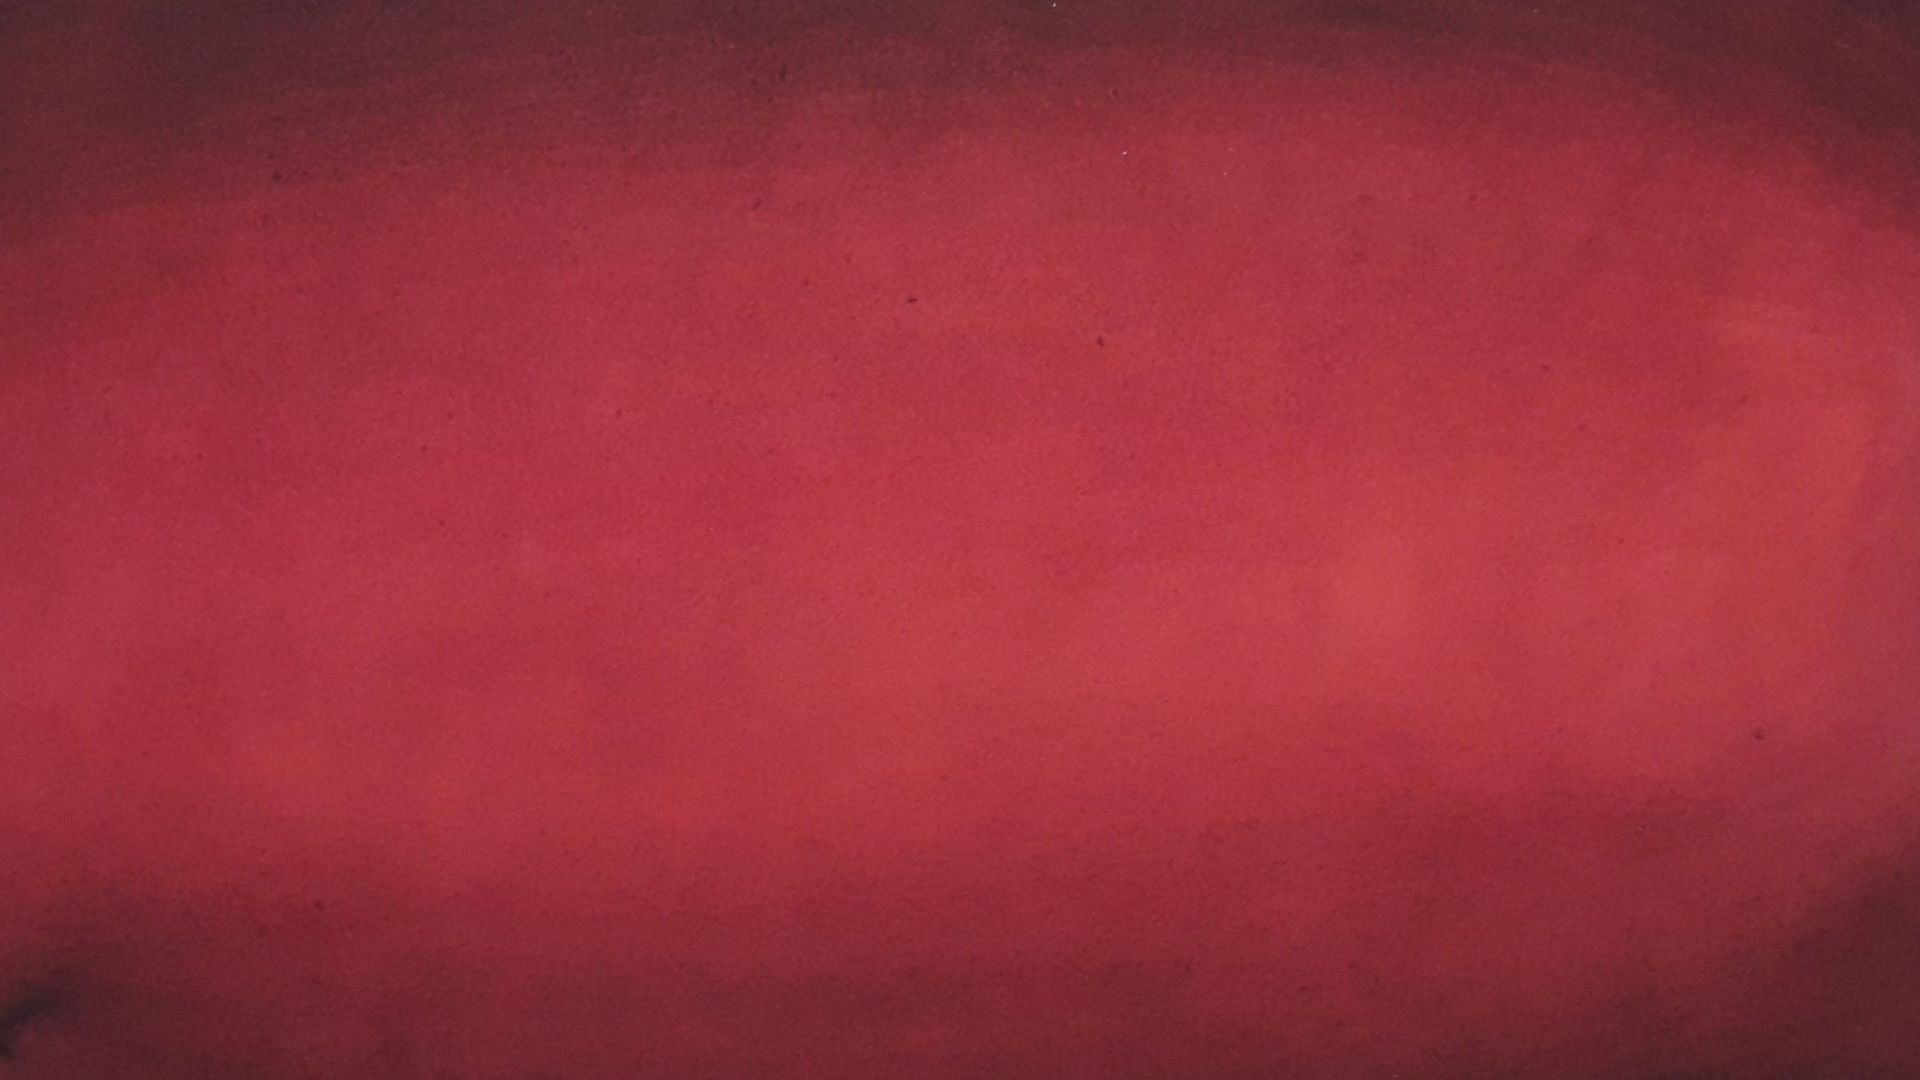 Alexandre Hollan, rayonnement de la lumière dans la couleur (rouge)